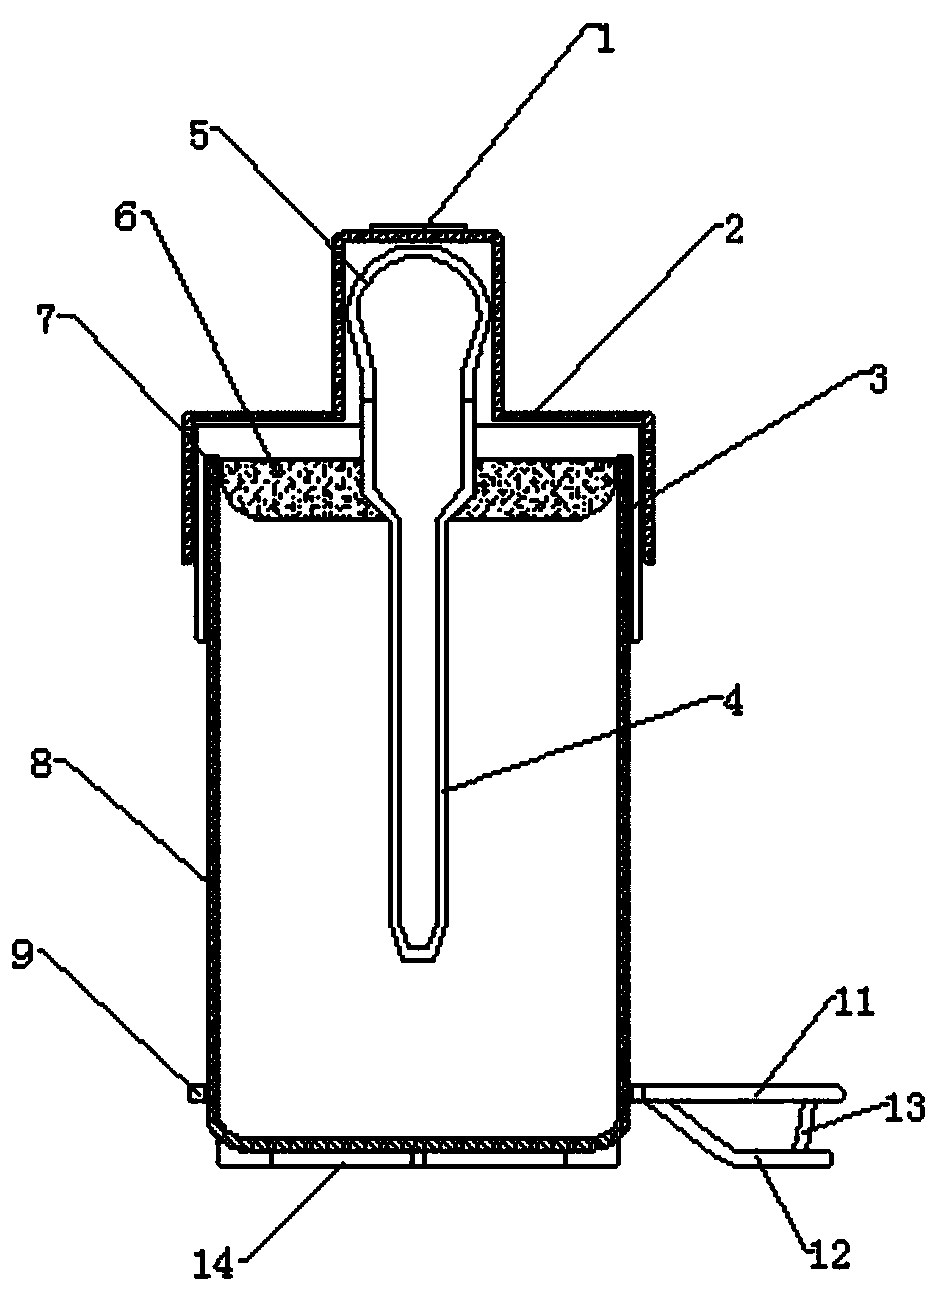 Novel cryopreservation tube